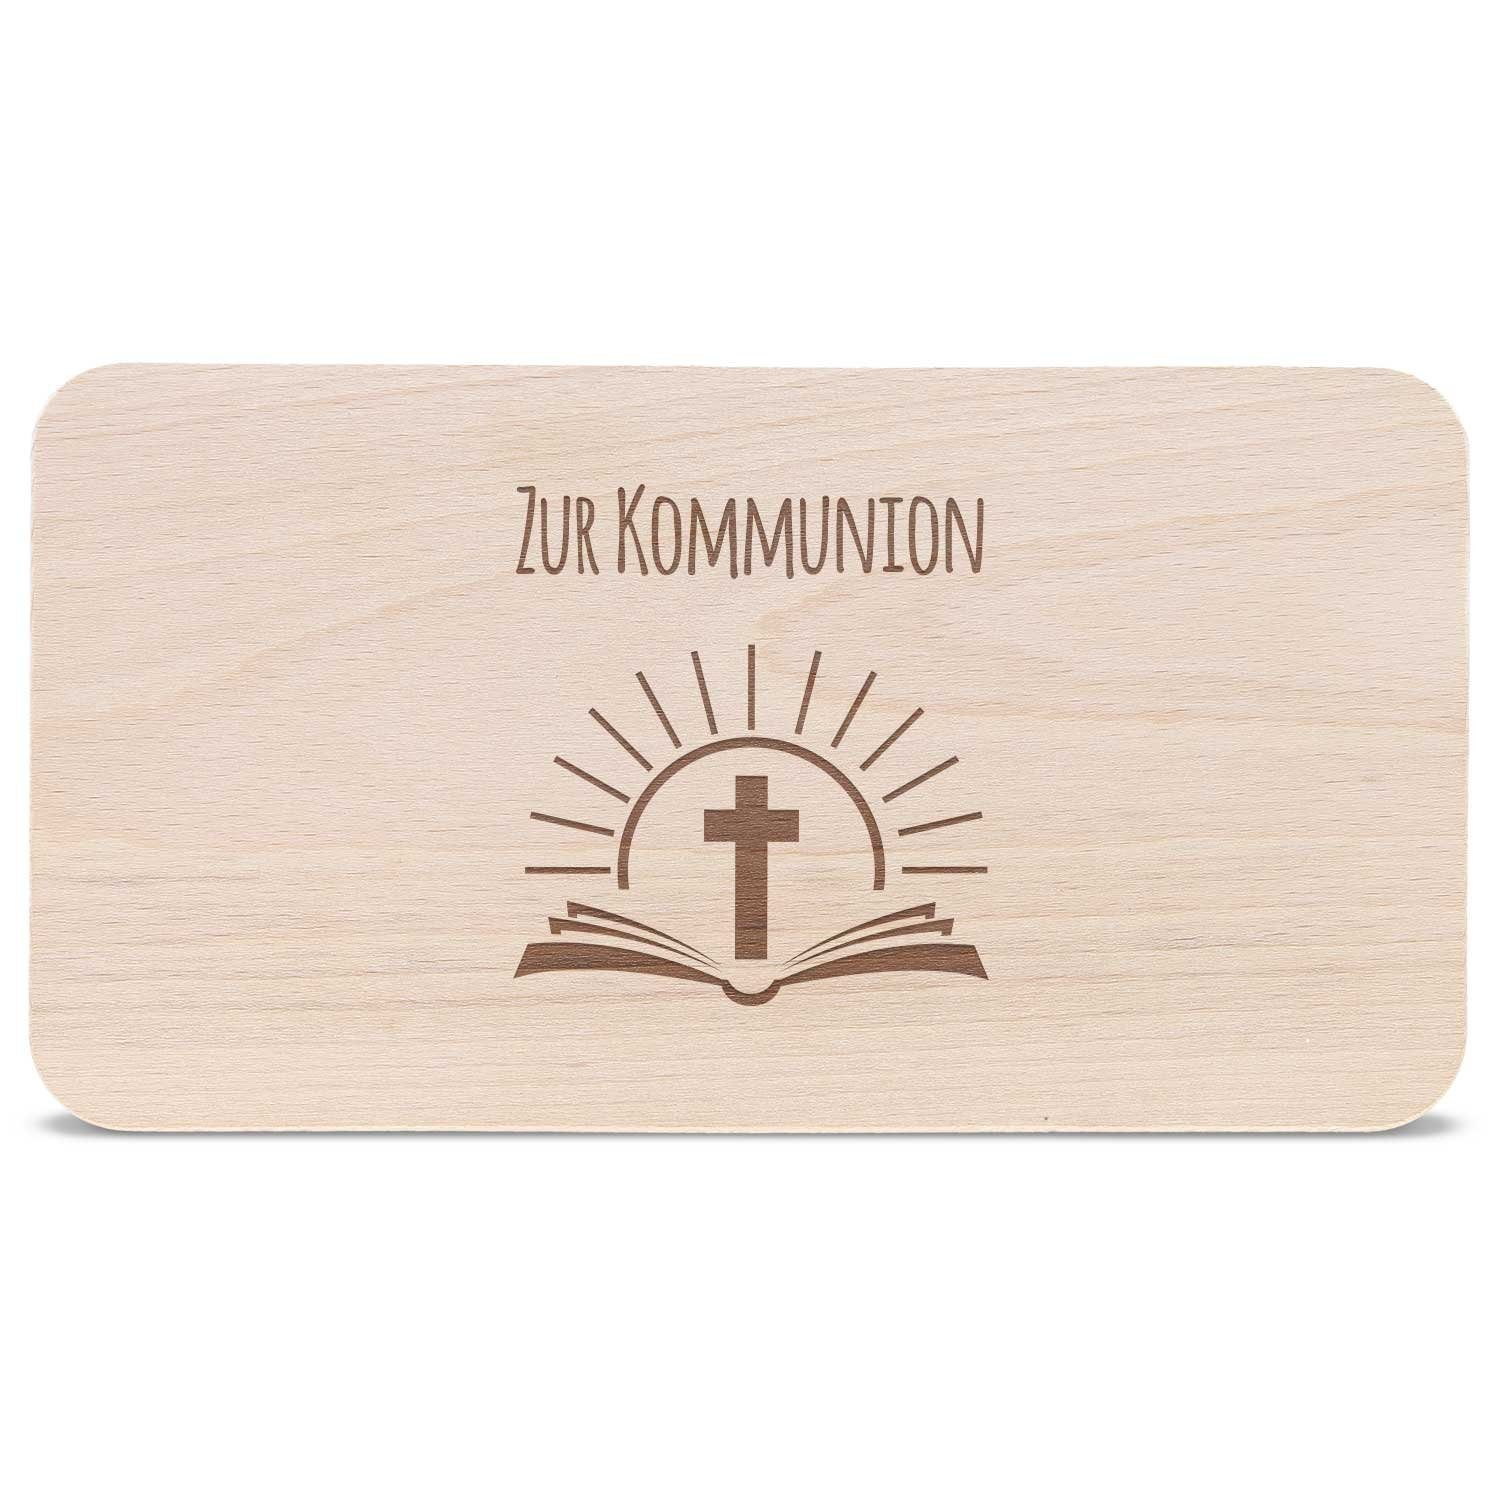 GRAVURZEILE Schneidebrett Frühstücksbrettchen mit Geschenk, - Gravur Bibel Kommunion Buchenholz - ideales